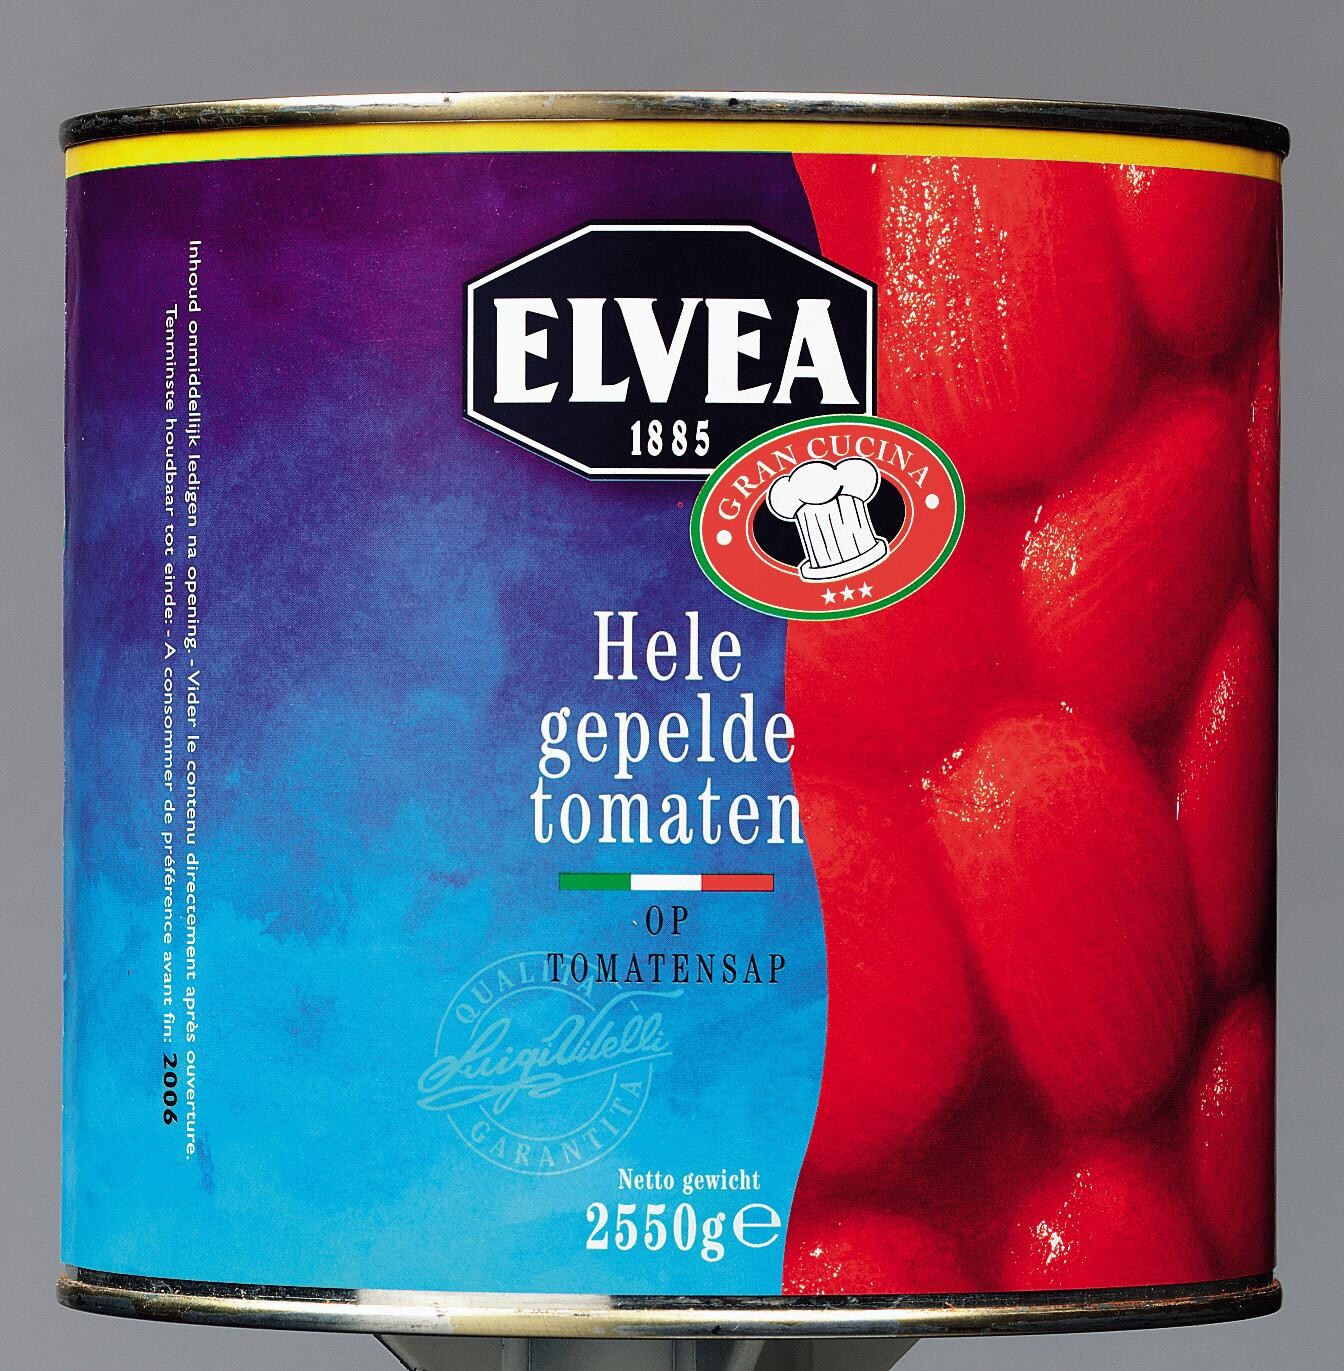 Elvea hele gepelde tomaten 3L Gran Cucina